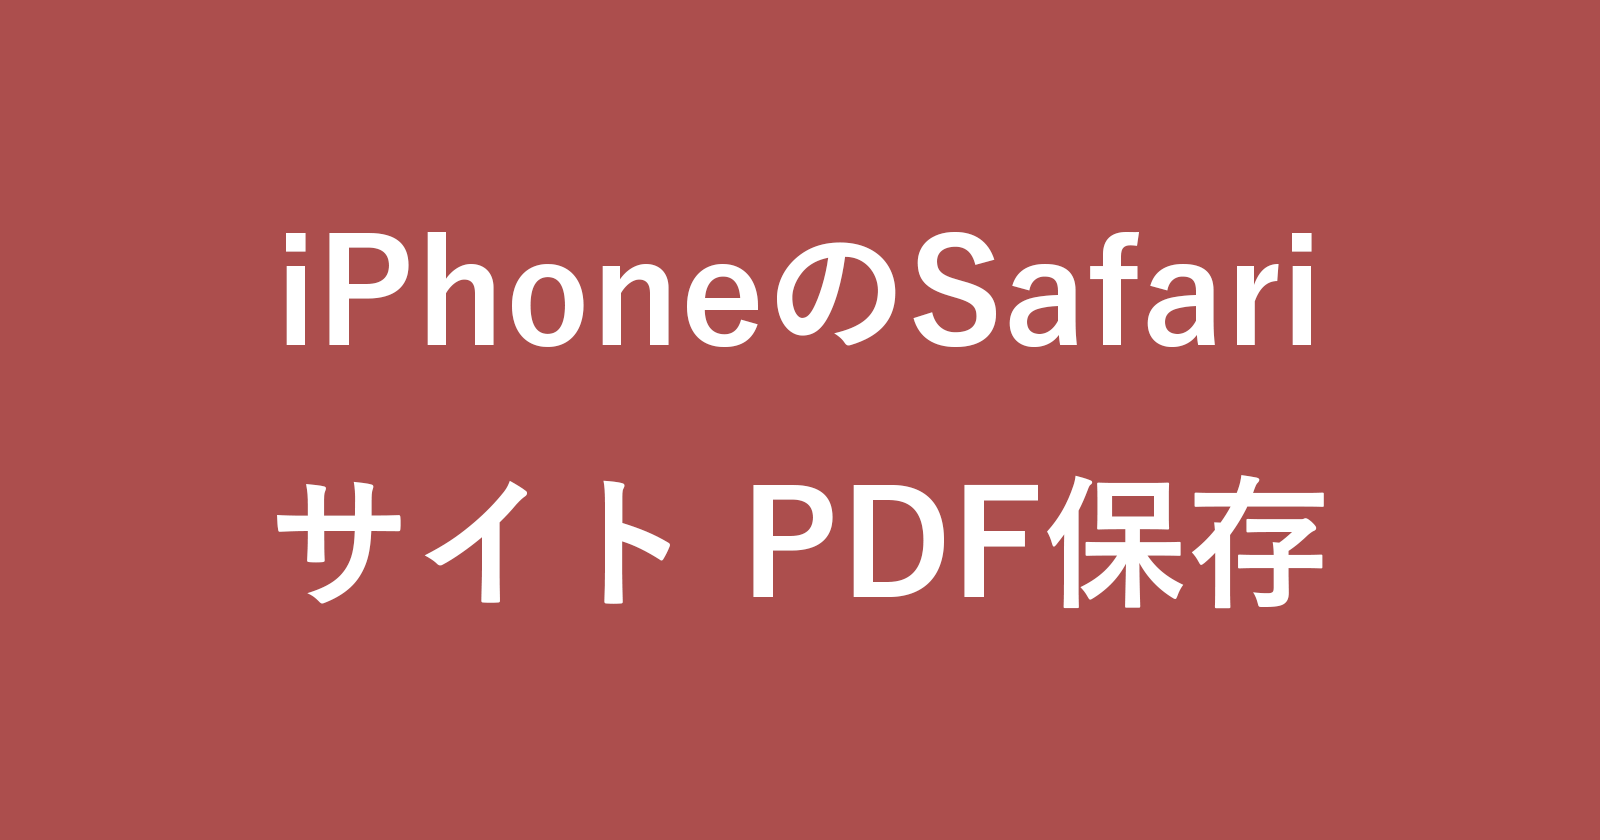 iphone safari pdf